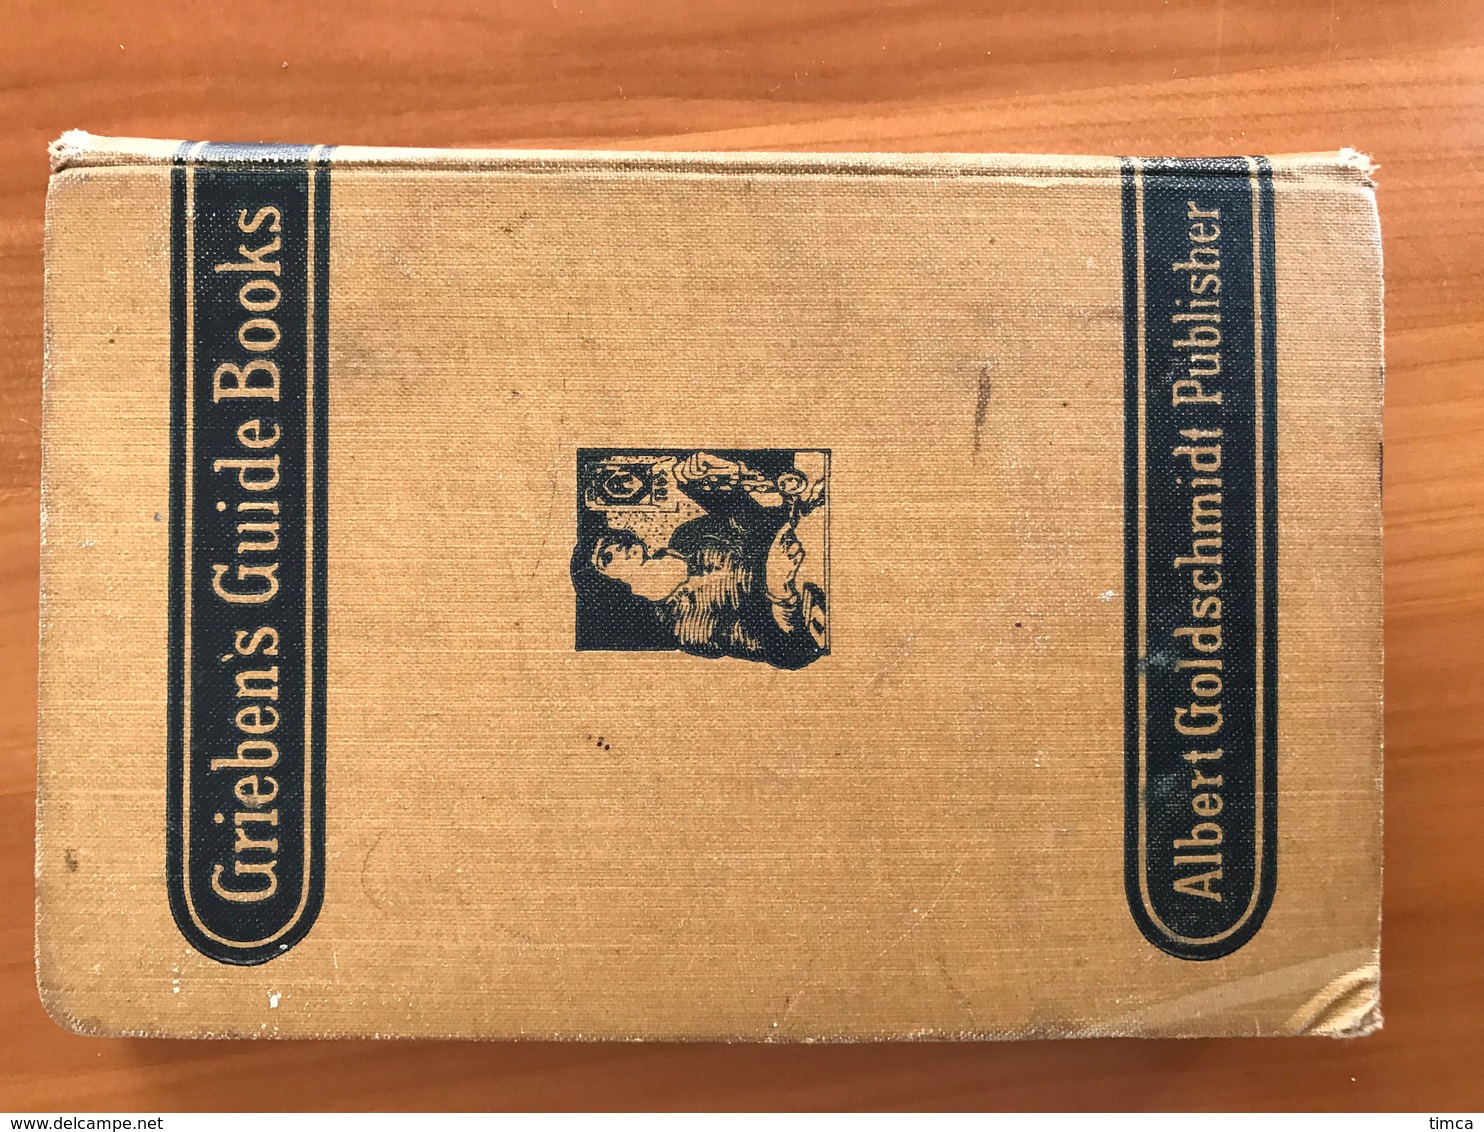 00001 Guide Touristique - Grieben's Guide Books Switzerland 1912 - Williams & Norgate - Europe